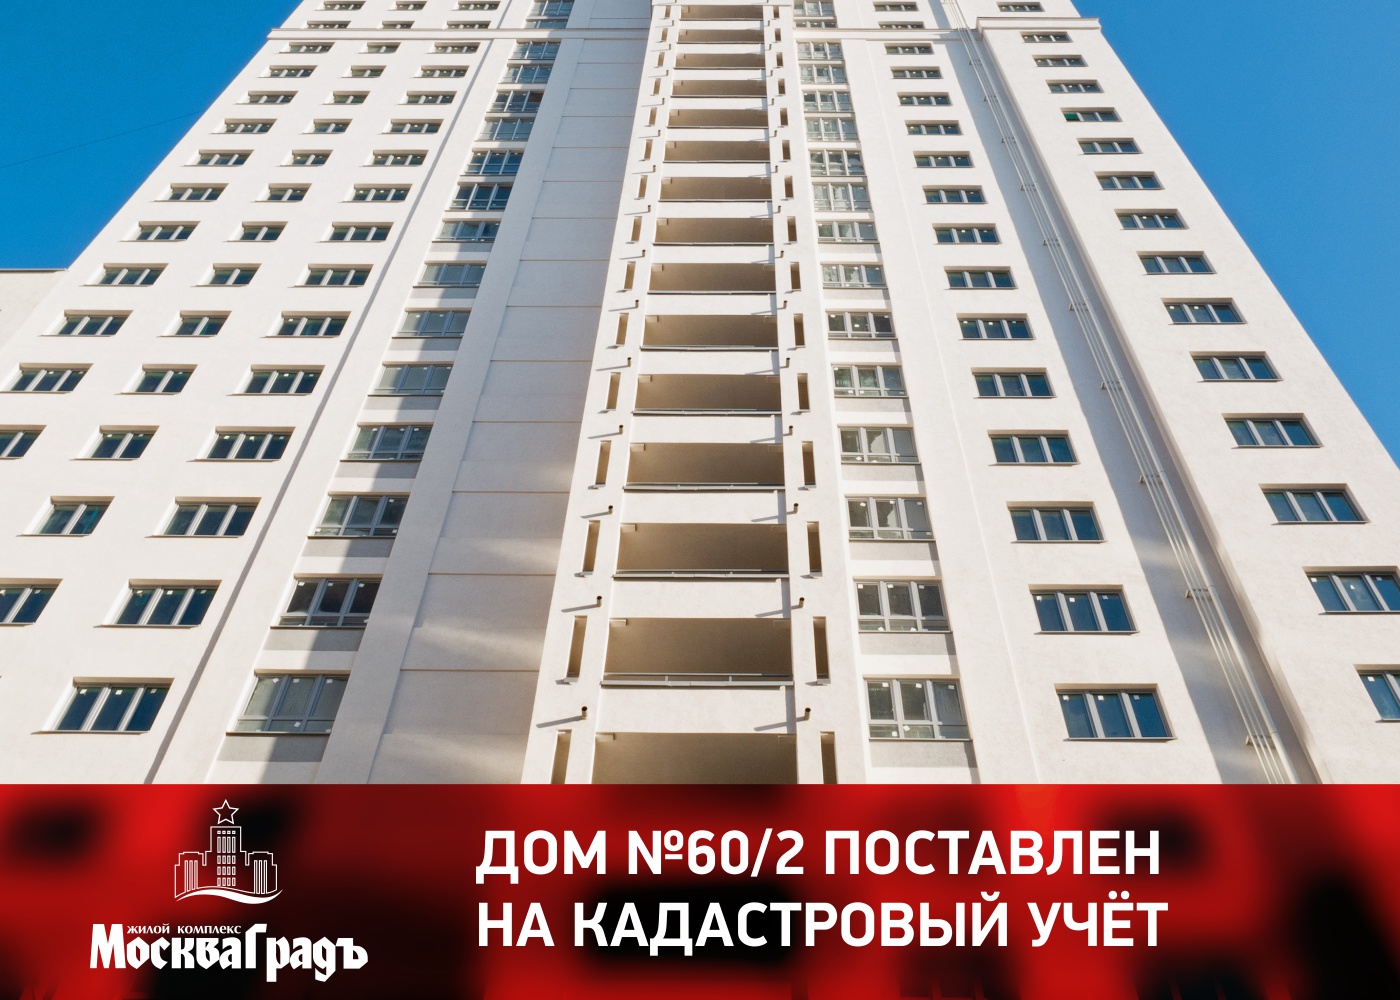 Дом 60/2 ЖК «Москва Град» поставлен на кадастровый учет